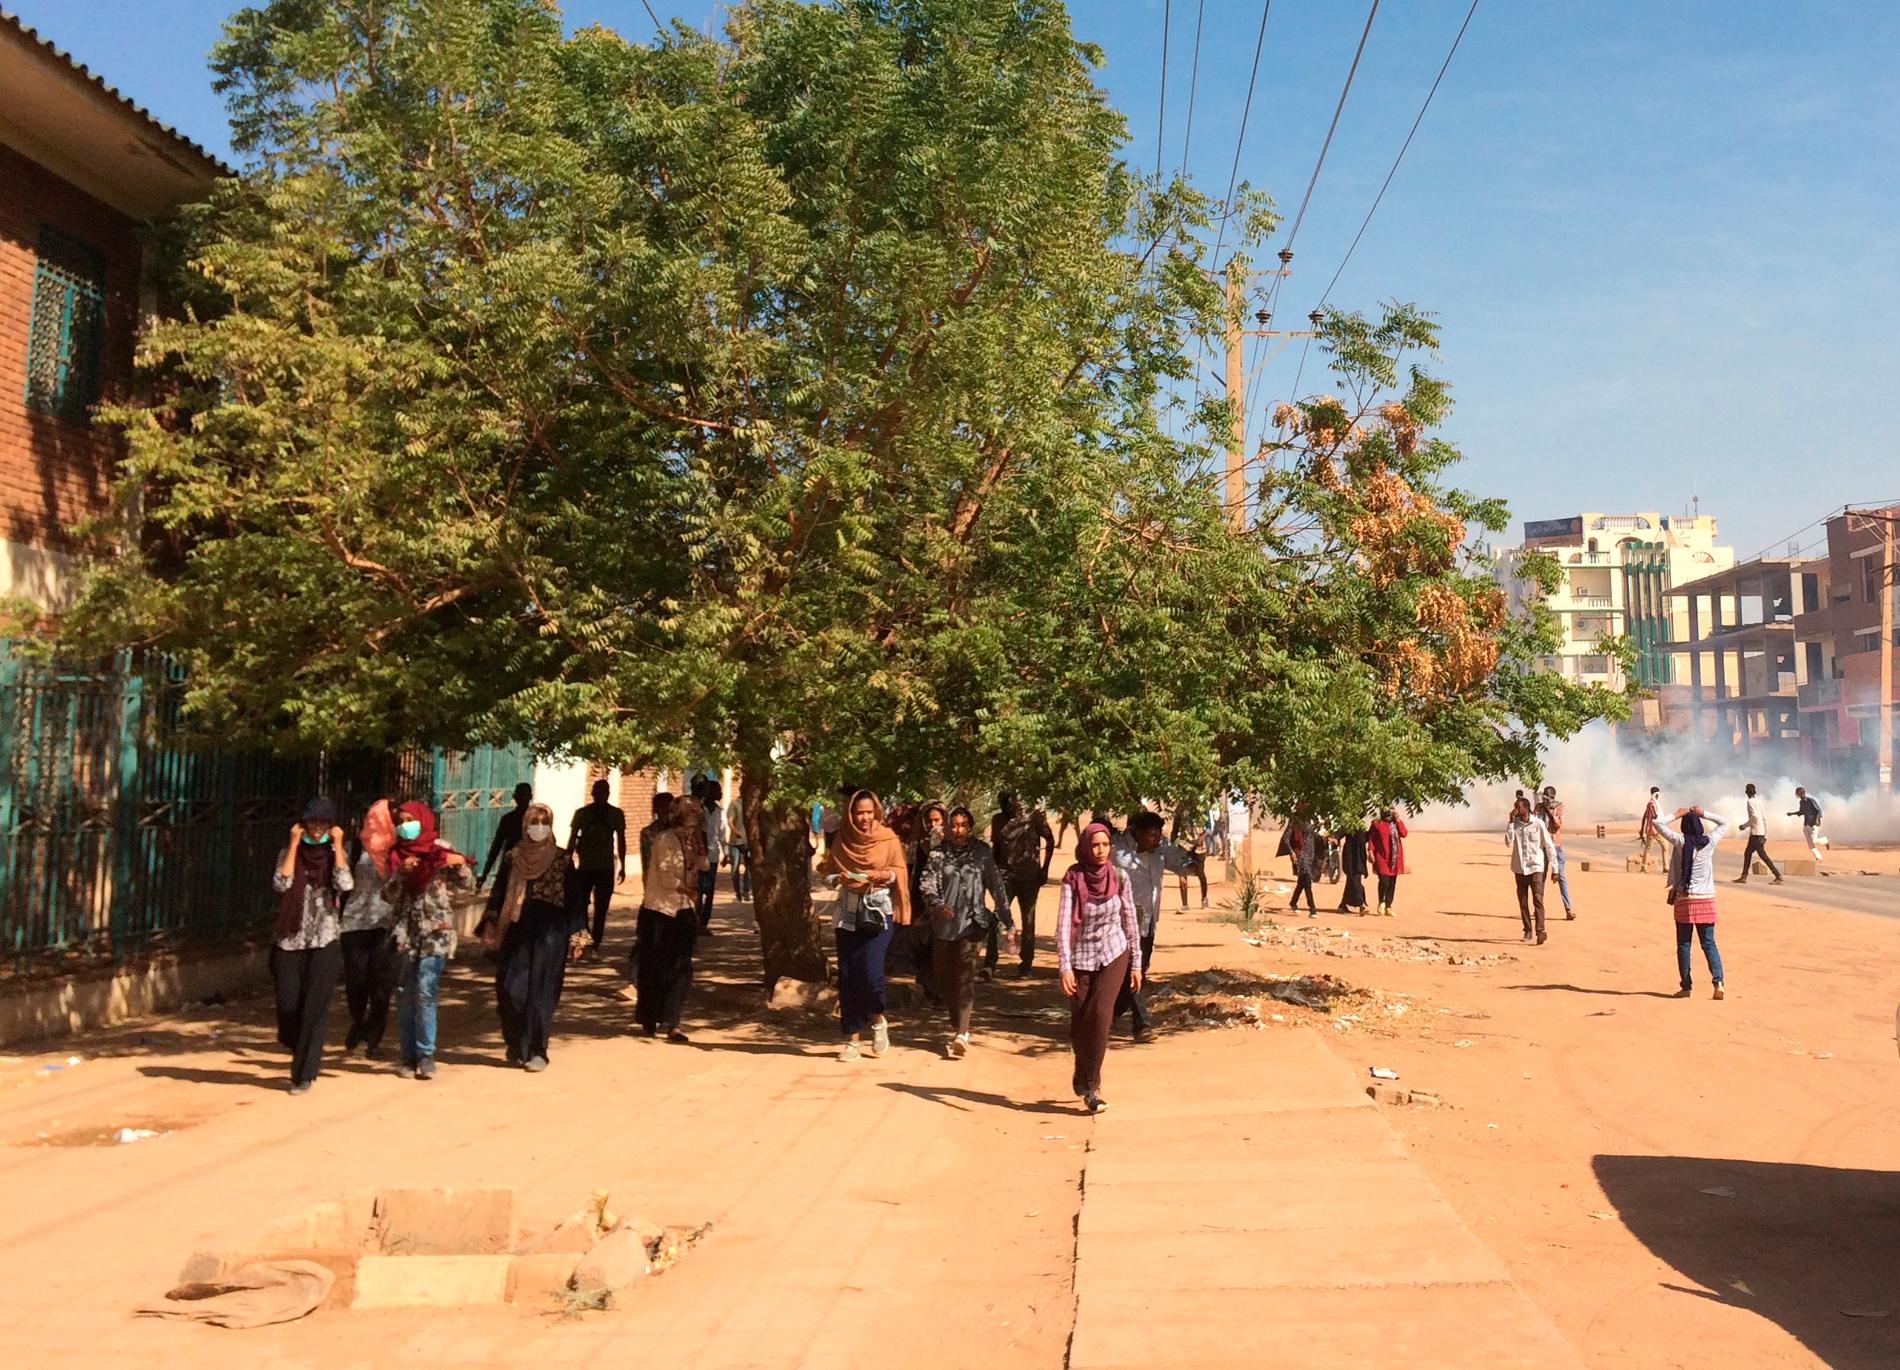 Demonstrationerna i Sudan har bemötts med tårgas vid fler tillfällen. Bild från Khartum söndagen den 13 januari.